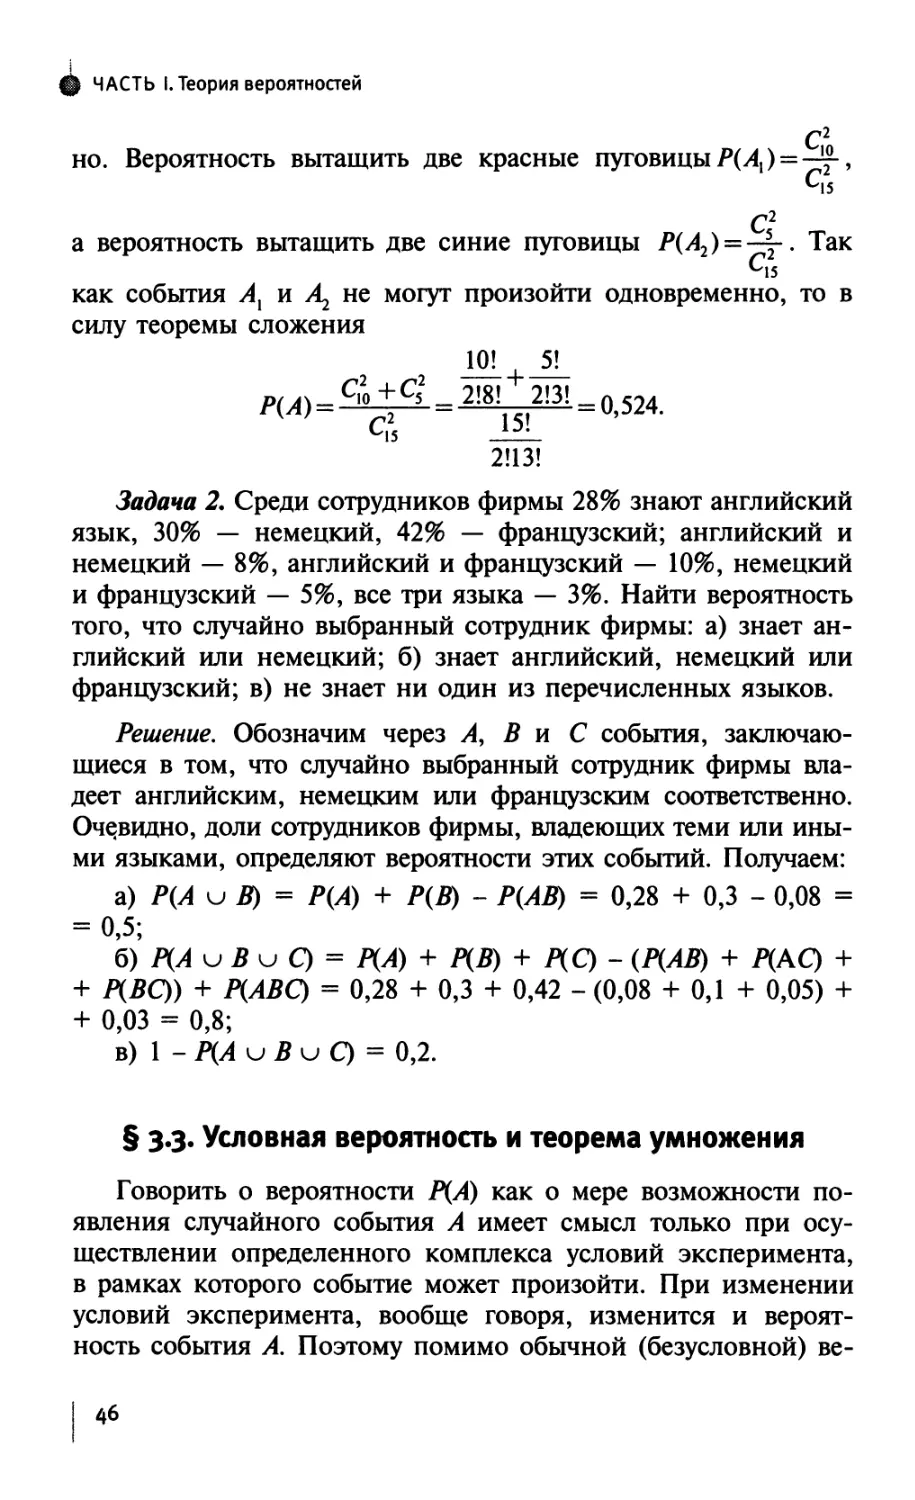 § 3.3. Условная вероятность и теорема умножения